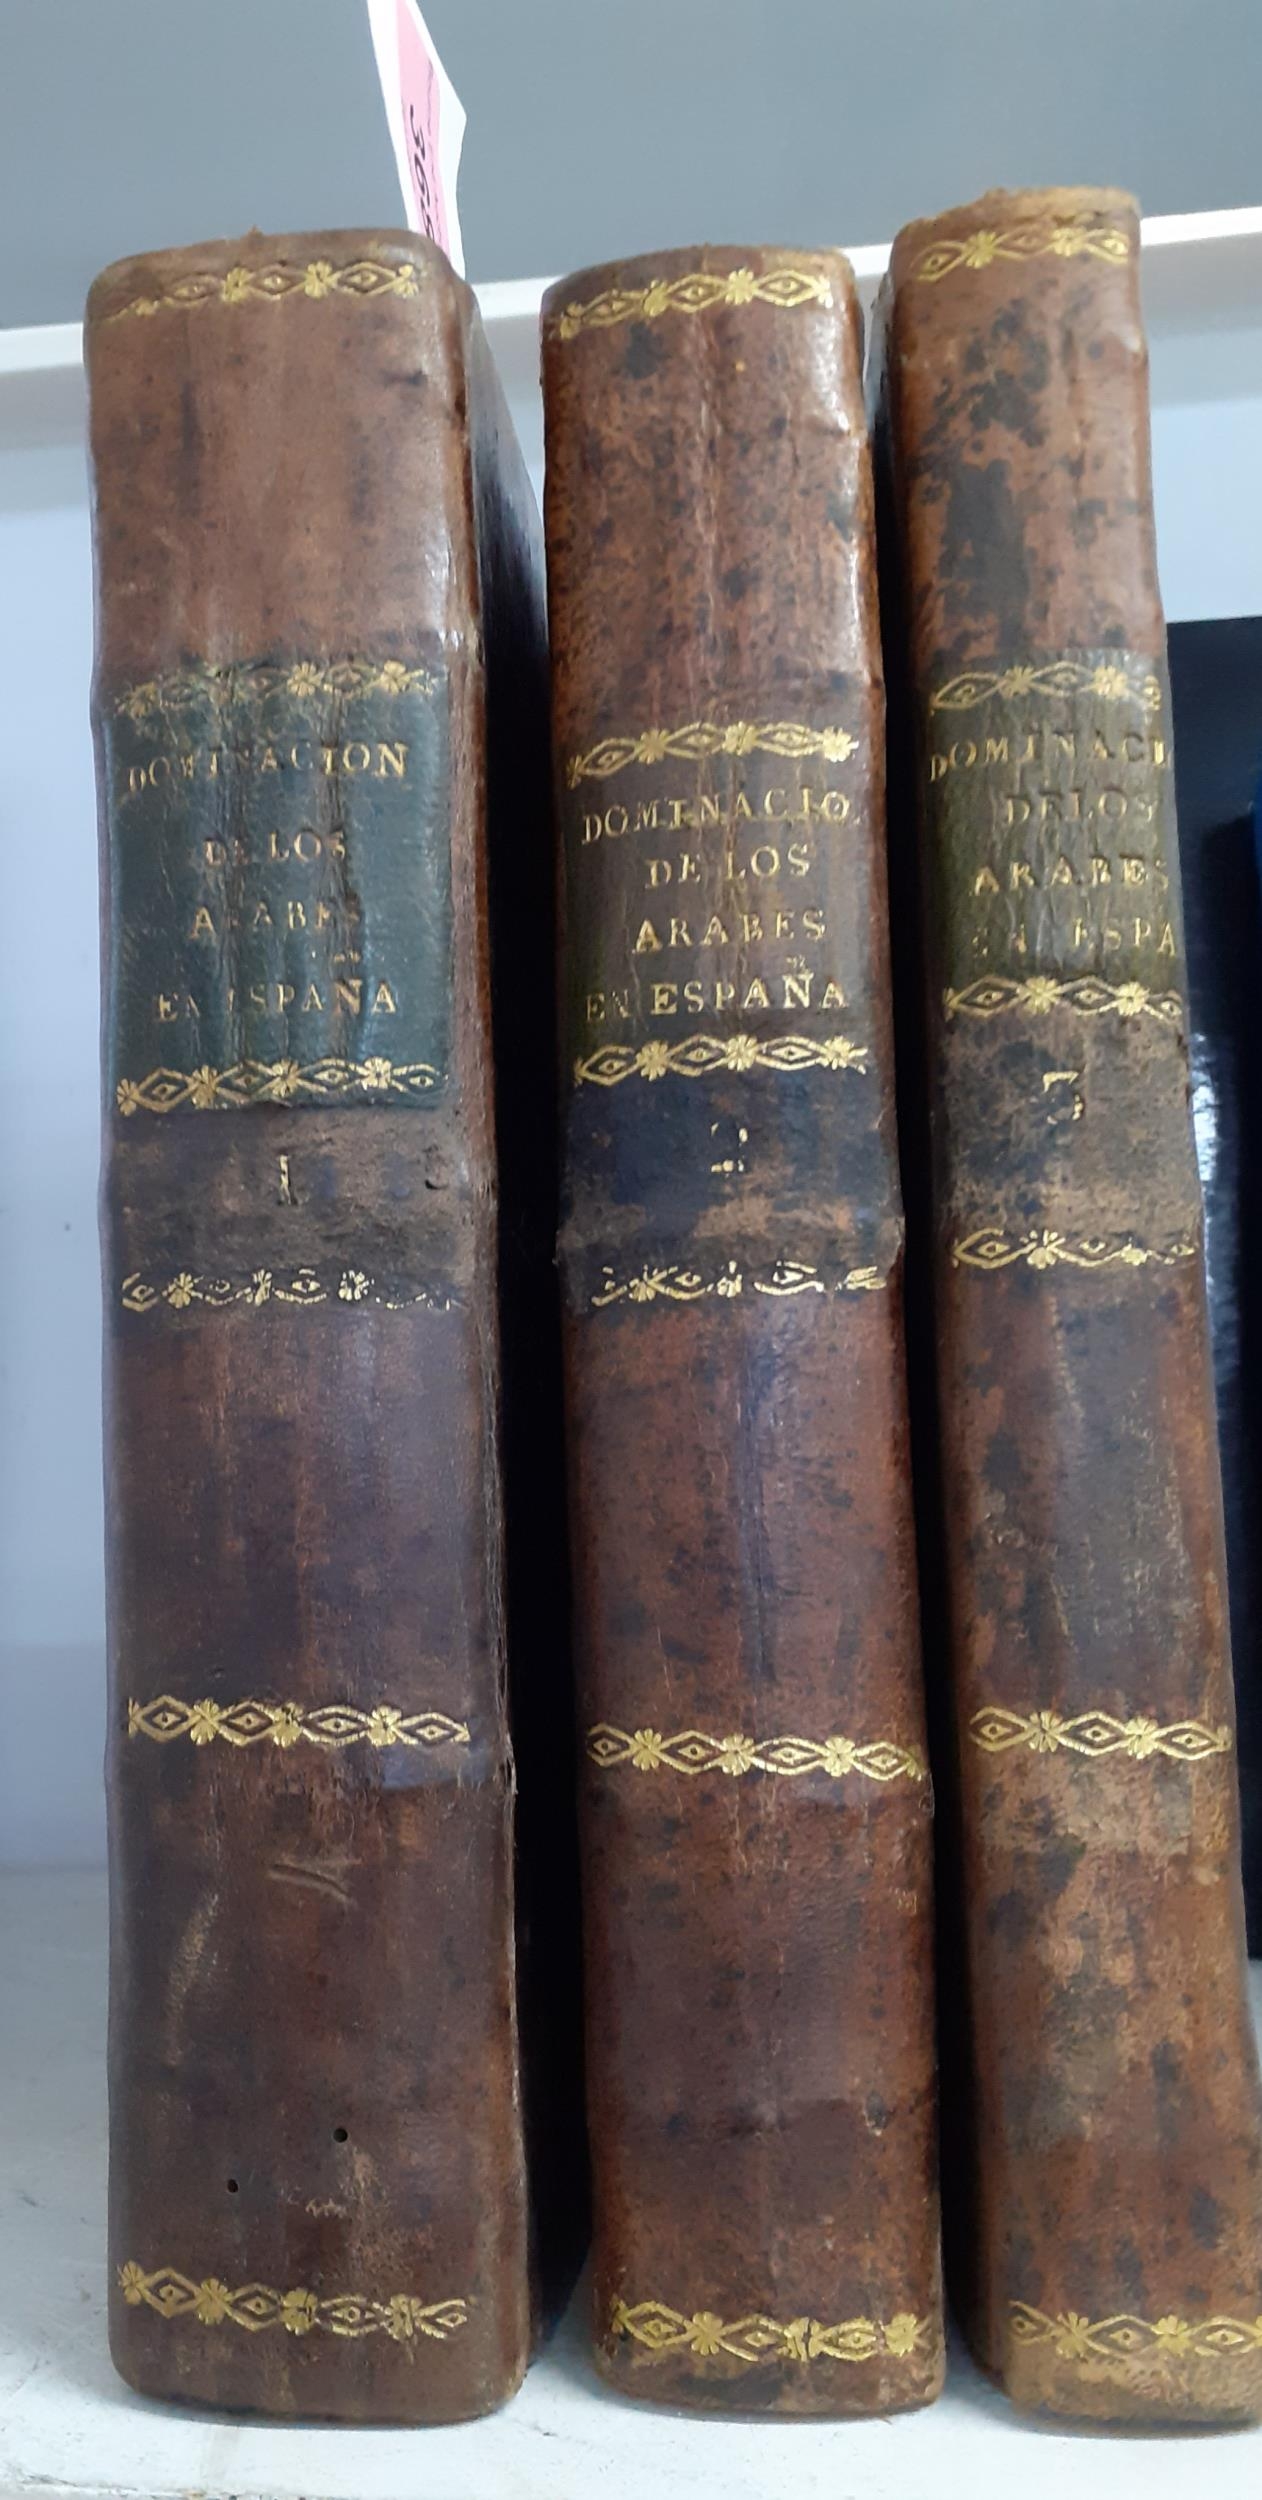 Books - 3 volumes of 1820 'Historia de la Dominaclon de lo Arabes' in Spanish for the doctor Don